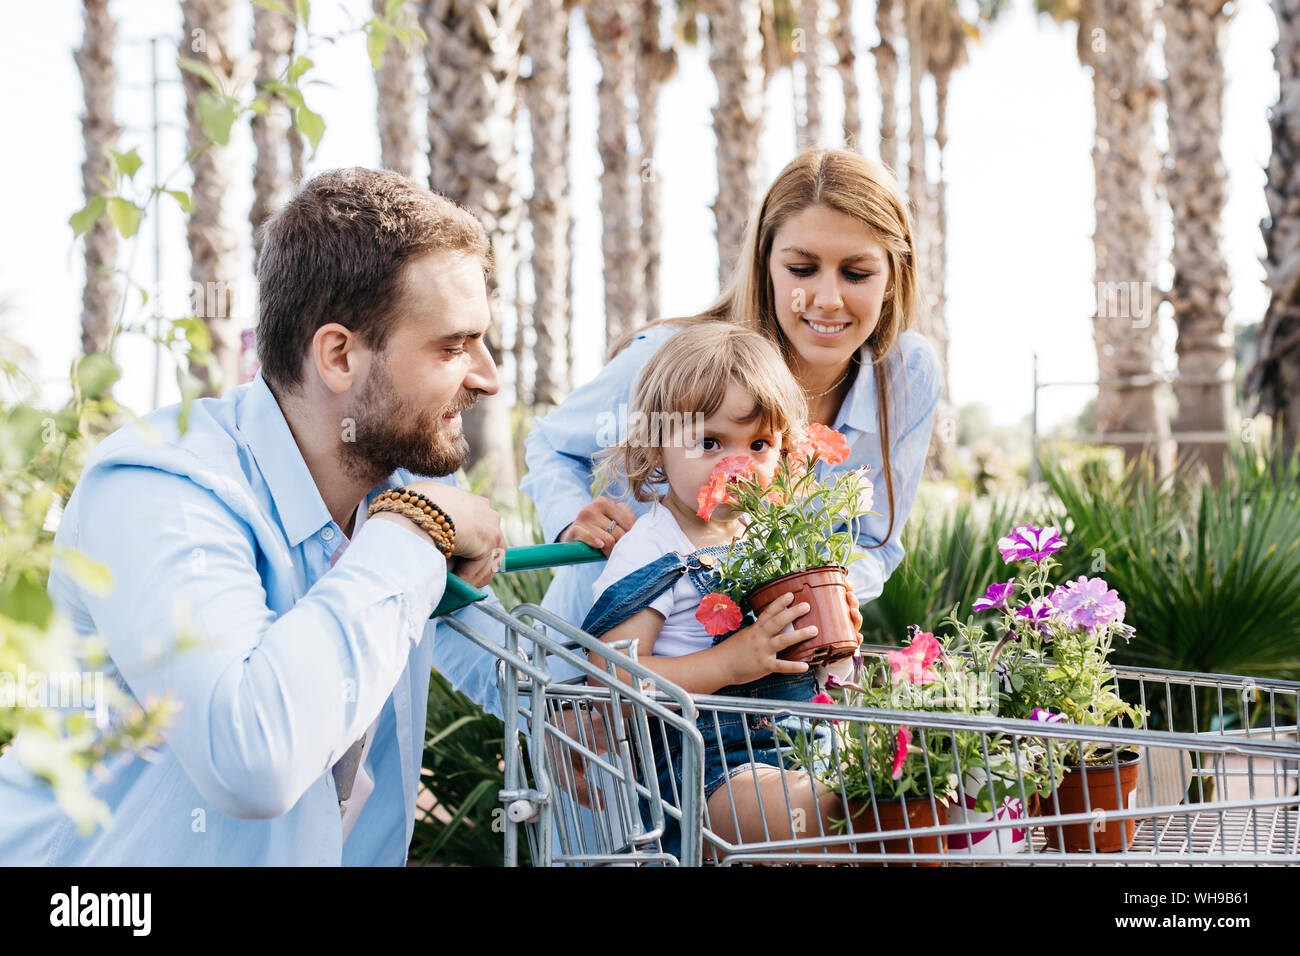 Familia comprar plantas en un centro de jardinería con la hija en compras oliendo una flor Foto de stock